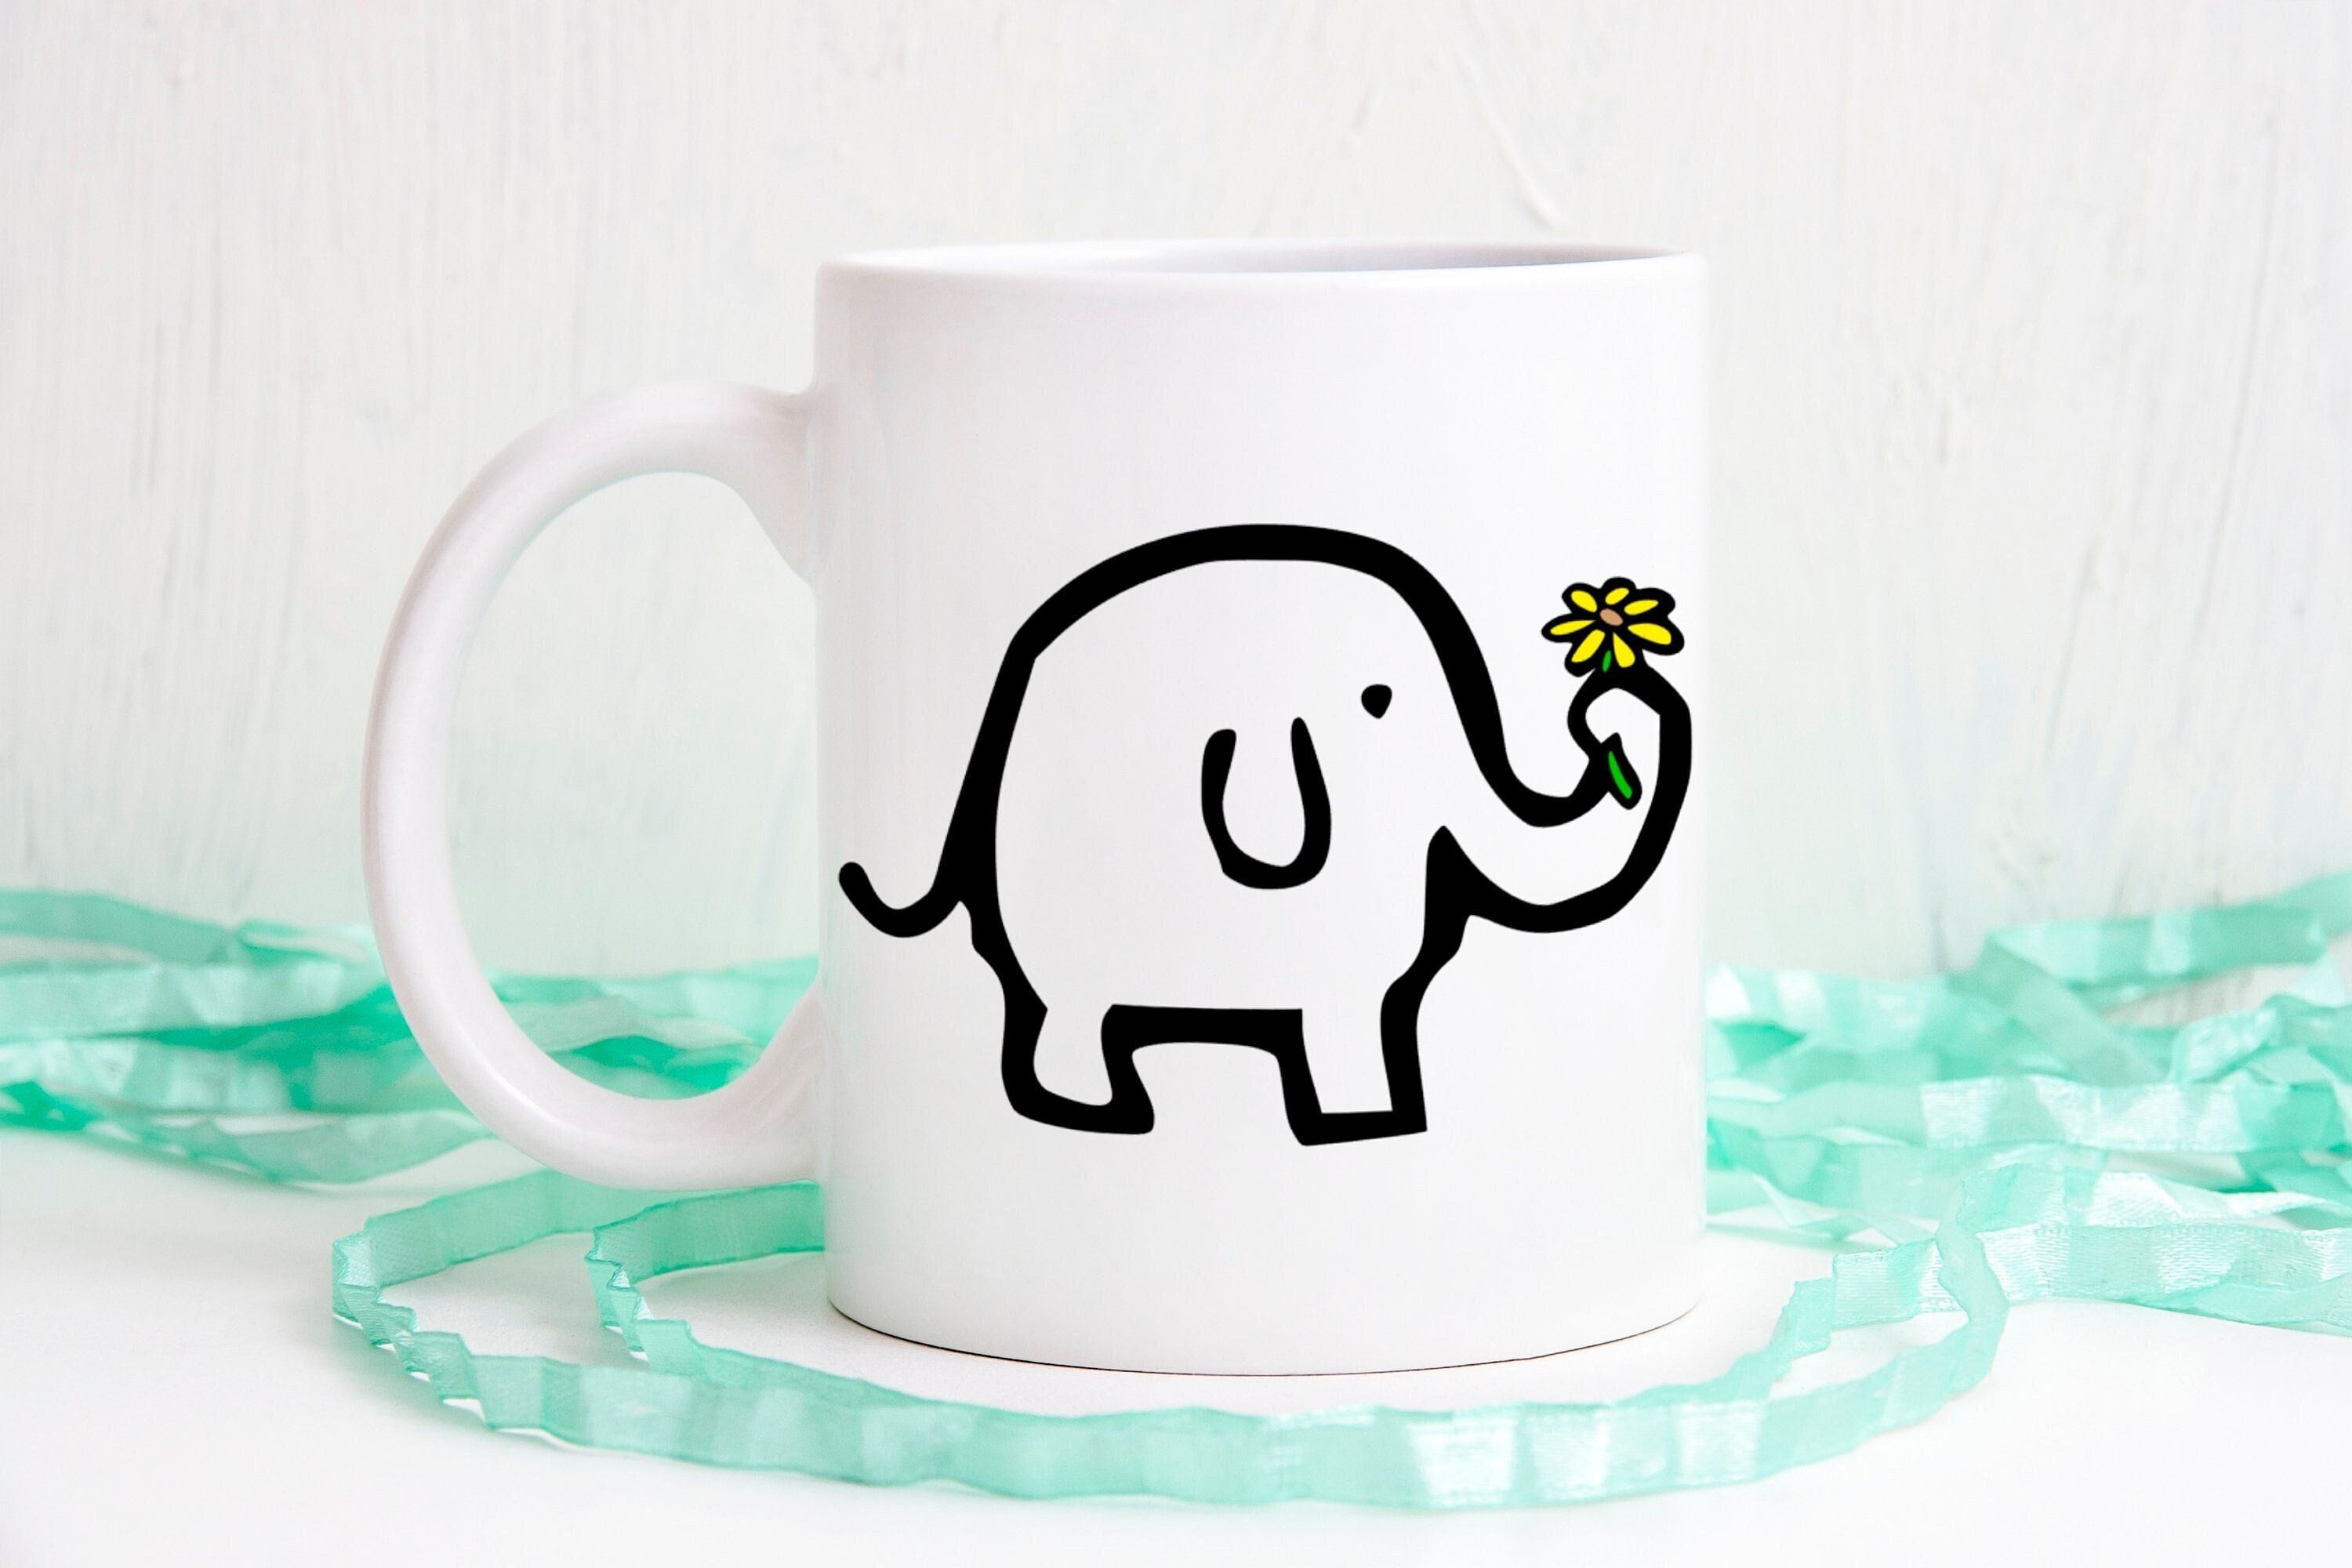 MyGift White Ceramic Unicorn Elephant Coffee Mug - Cute White Elephant  Gift, 3D Animal Design Drinki…See more MyGift White Ceramic Unicorn  Elephant